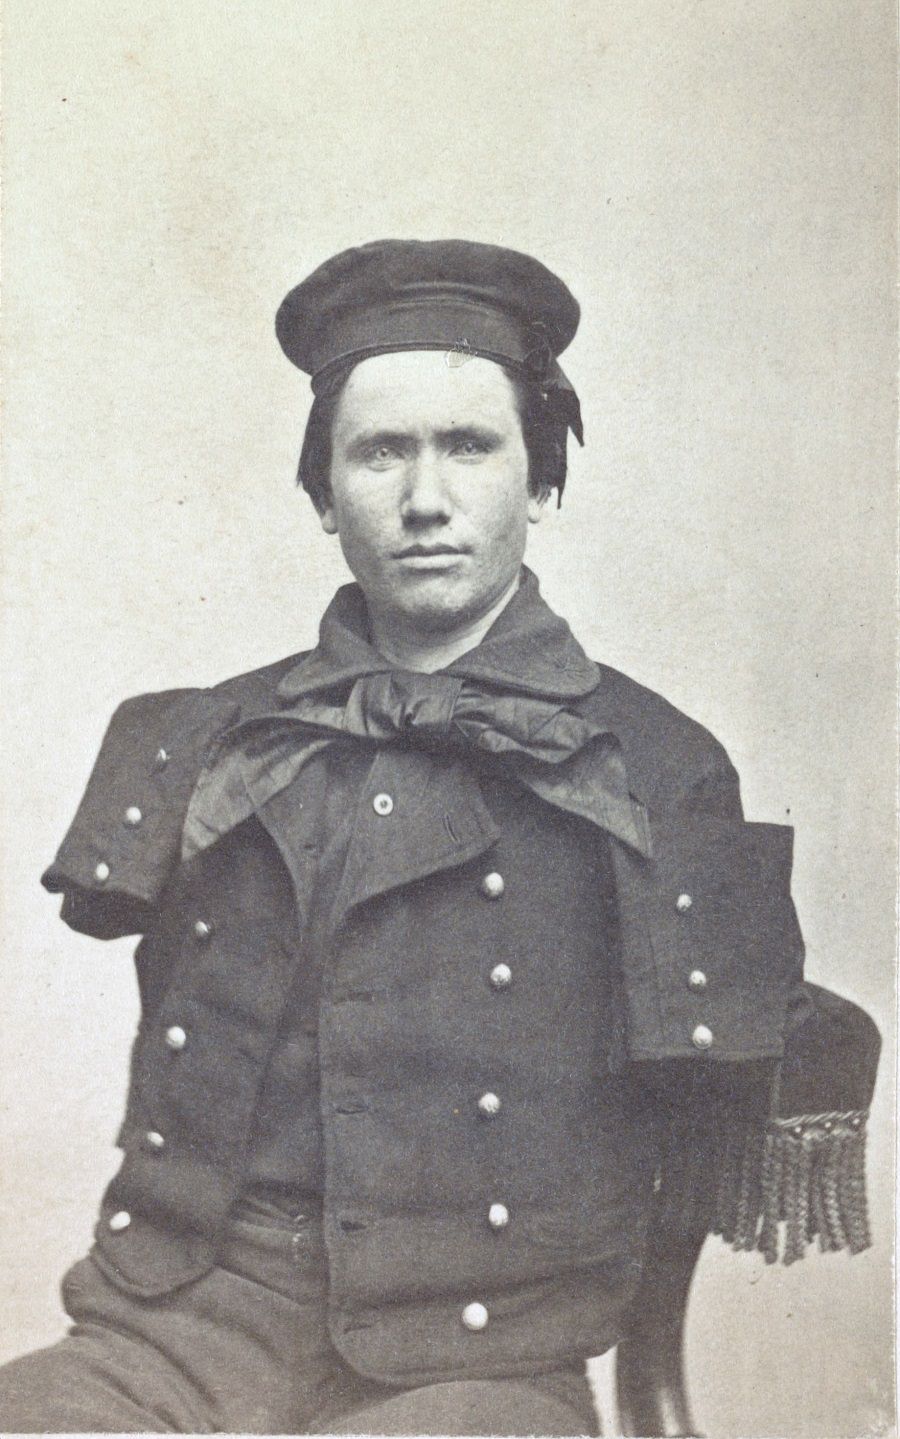 Richard D. Dunphy, U.S. Navy coal heaver in uniform. 1864.